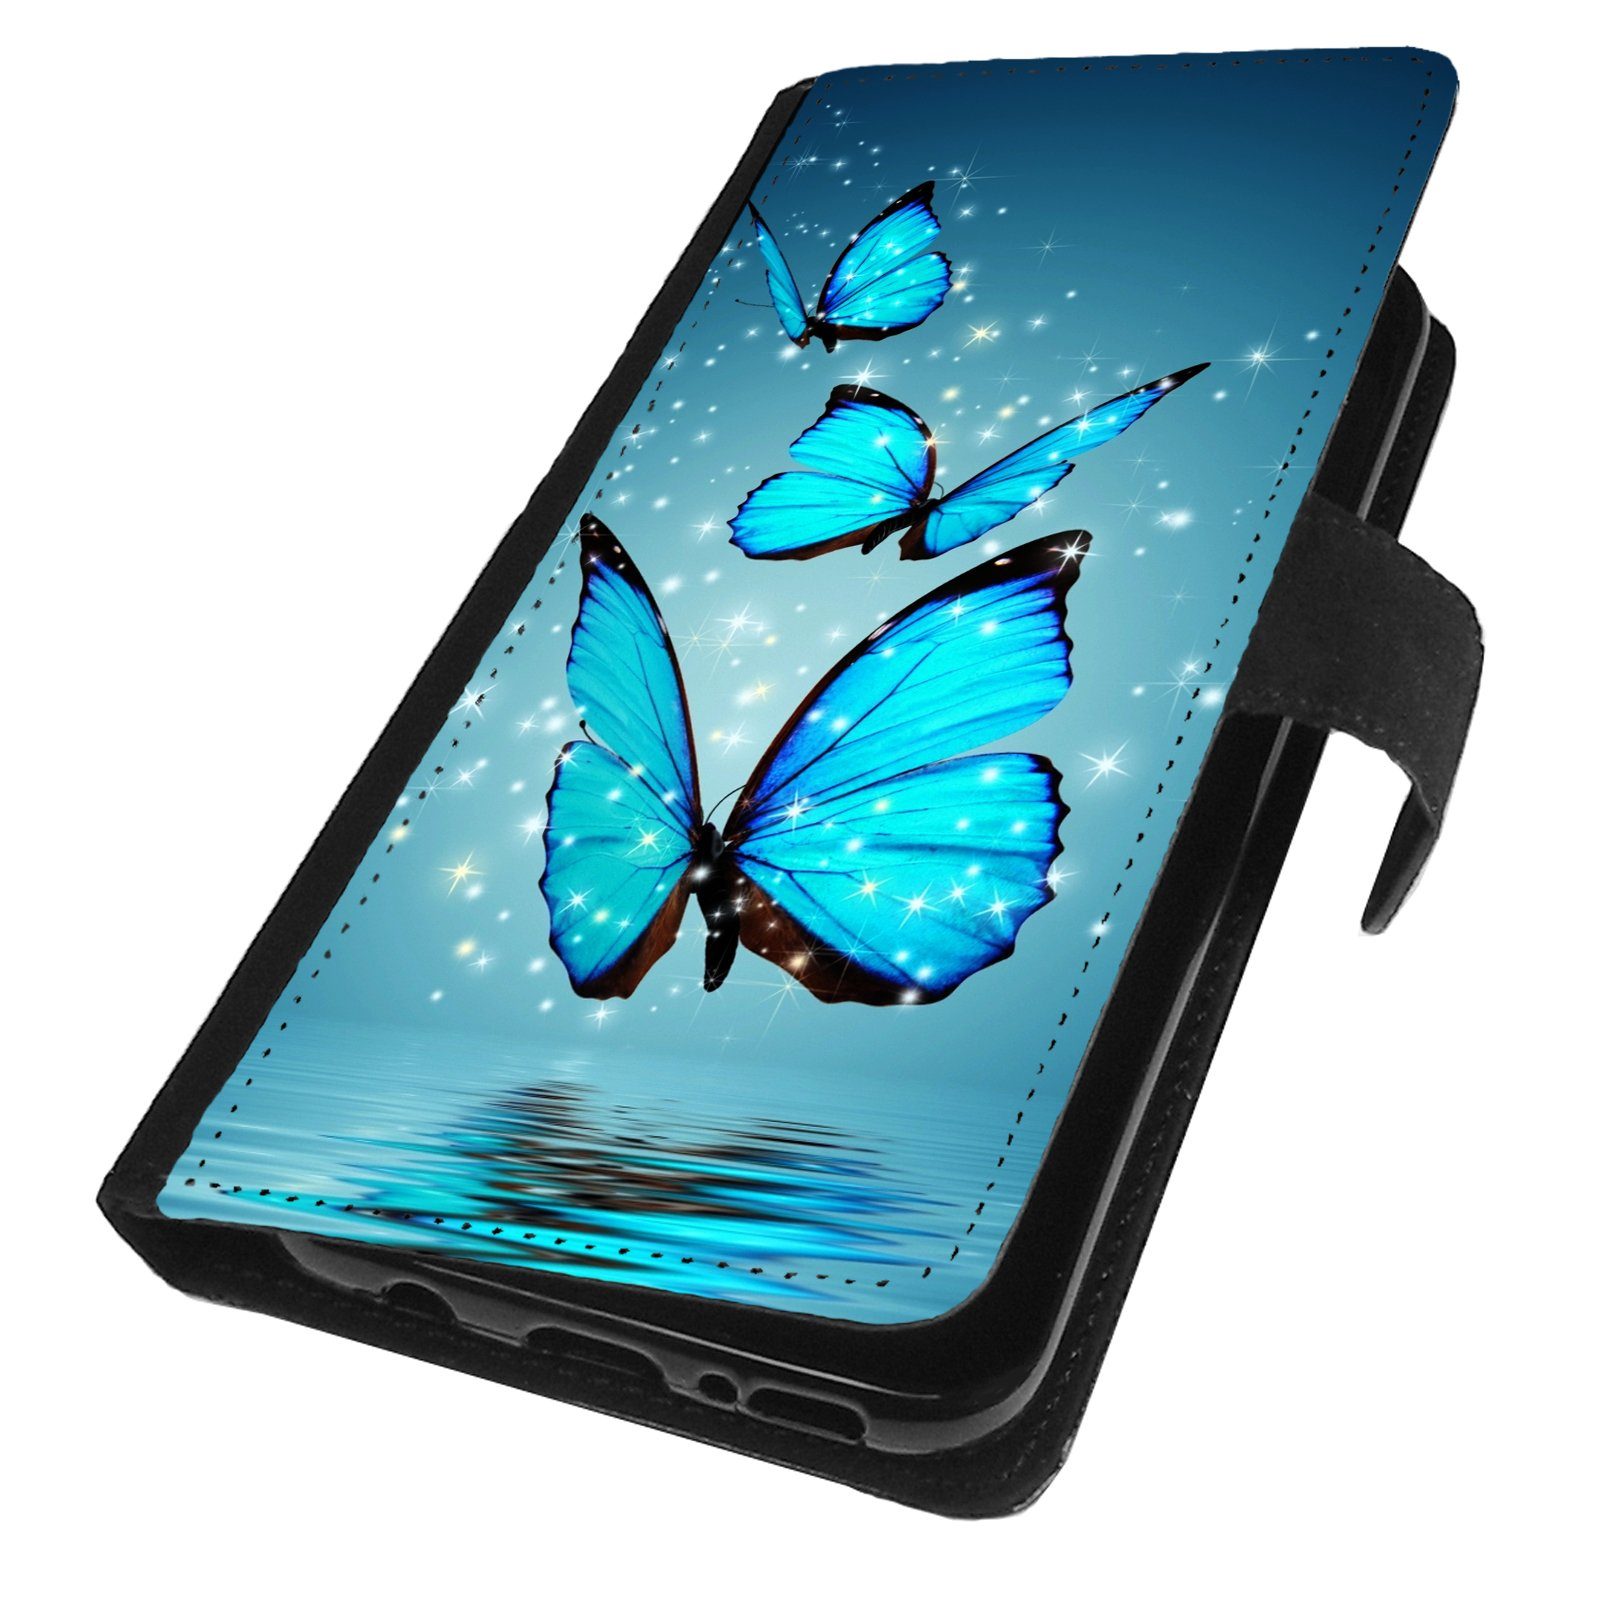 Traumhuelle Handyhülle Für Samsung Galaxy S22 5G / S22 Plus 5G / S22 Ultra 5G  Hülle Motiv 4, Schmetterling Handy Tasche Klapp Schutzhülle Case Etui Cover  Silikon